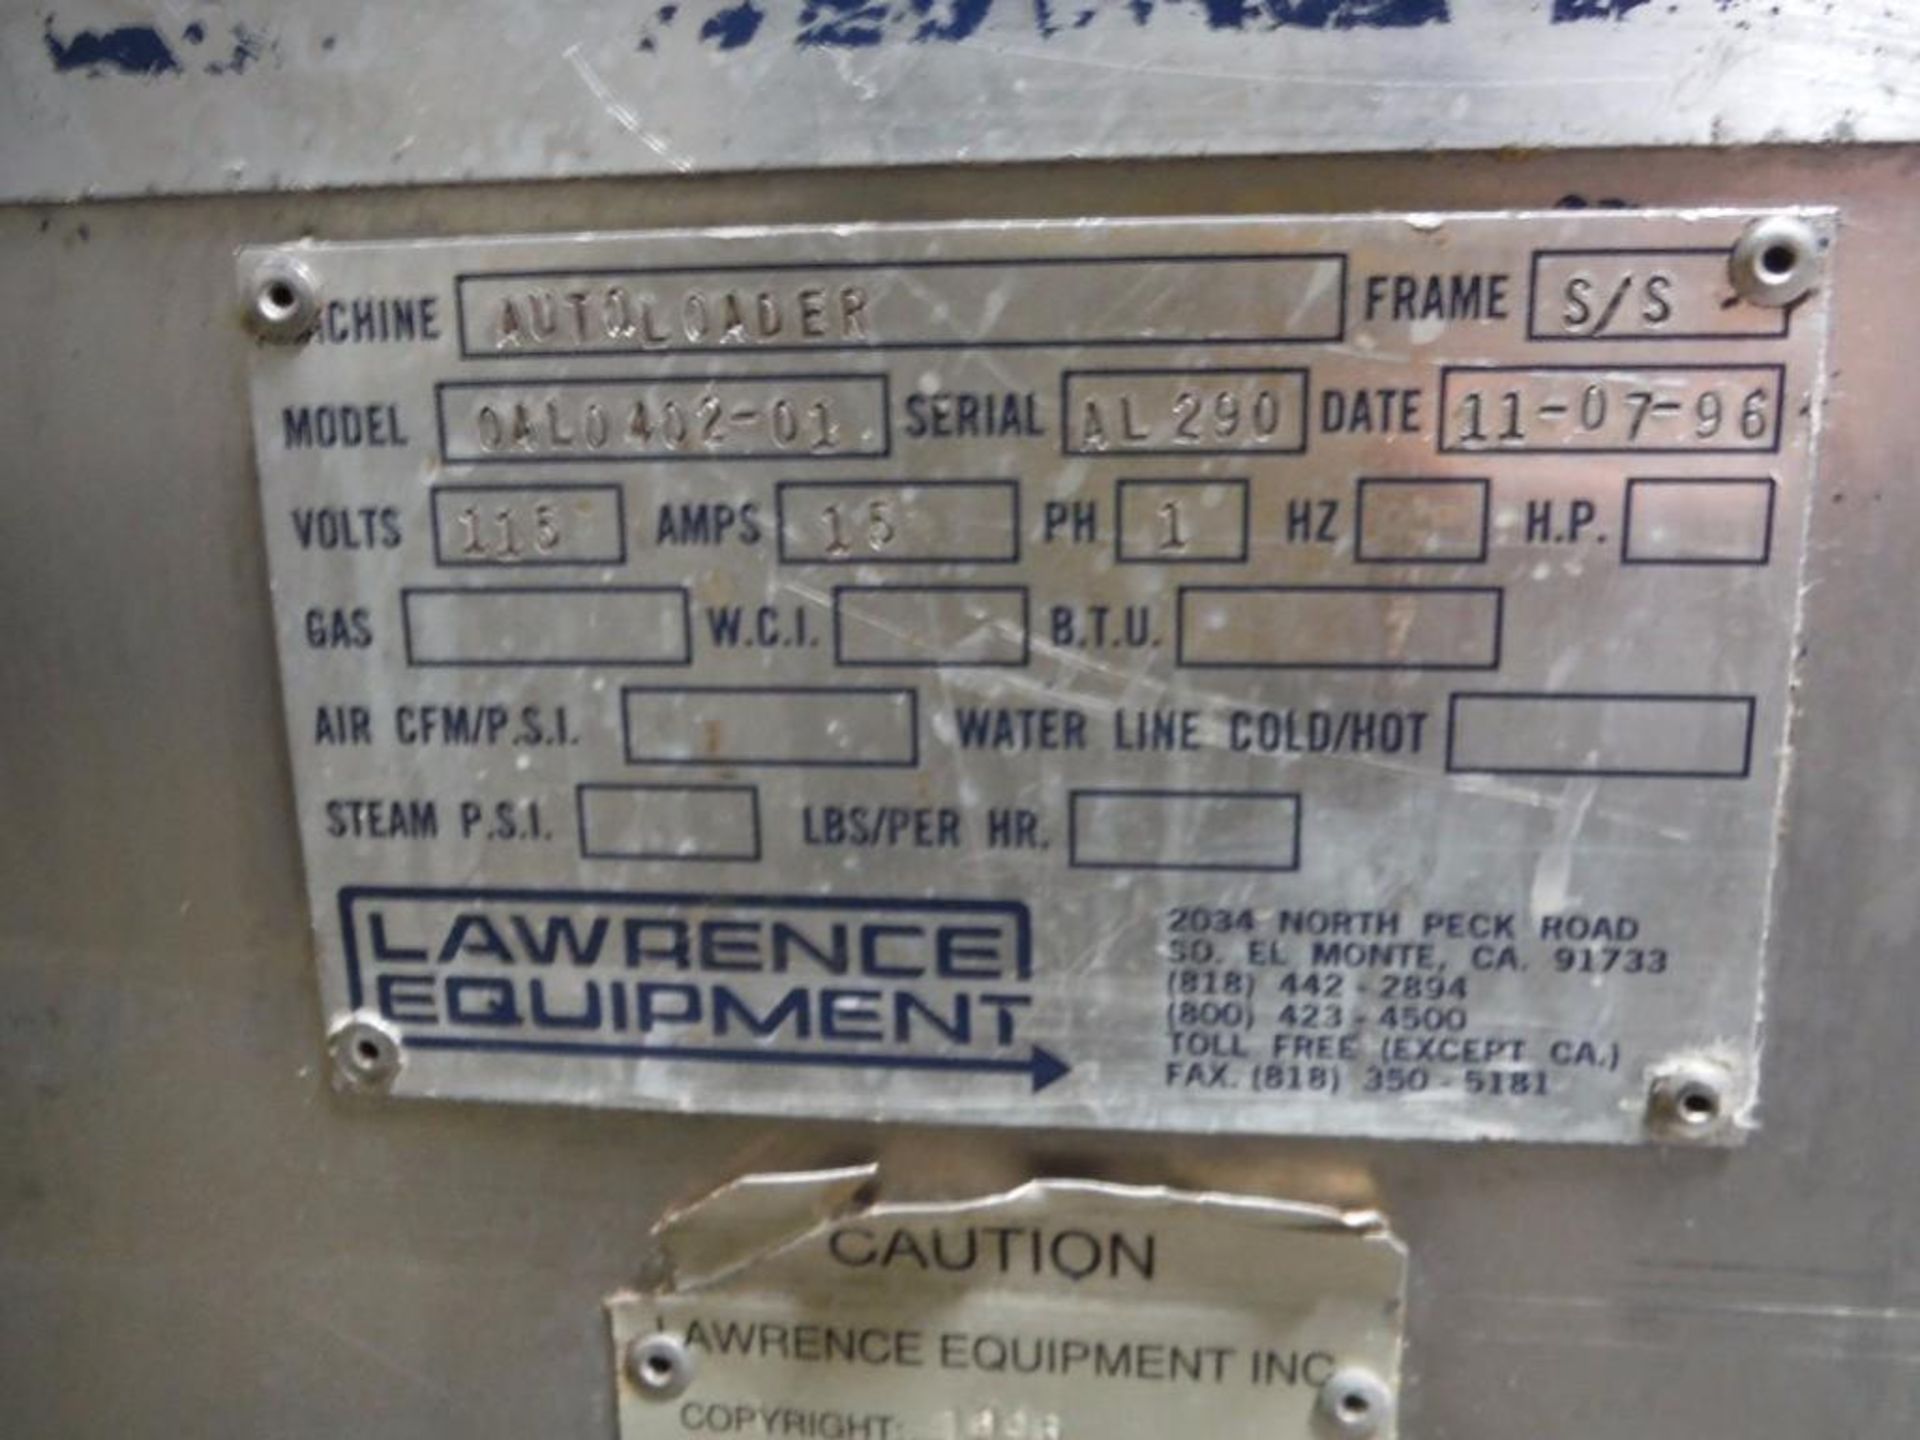 Lawrence equipment autloader proofer, Model 0AL0402-01, SN AL290 / Rigging Fee: $2410 - Image 7 of 8